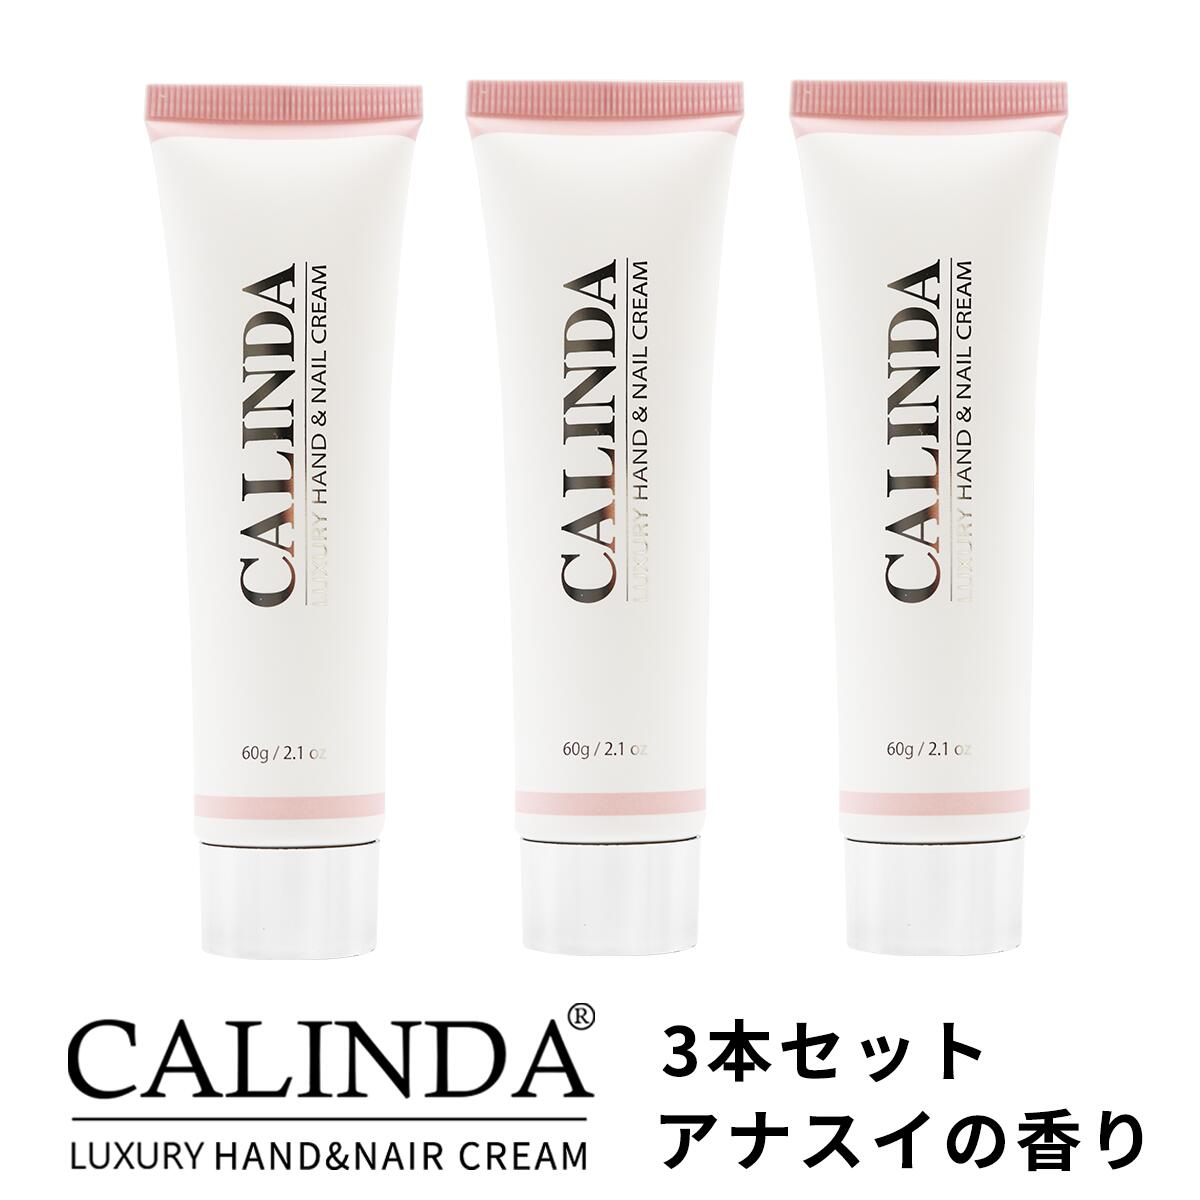 【送料無料】CALINDA HAND&NAIL CREAM ANASUI ハンド＆ネイルクリーム カリンダ アナスイ 60g ×3本セット  4934795380473 | Global Beauty Salon Support